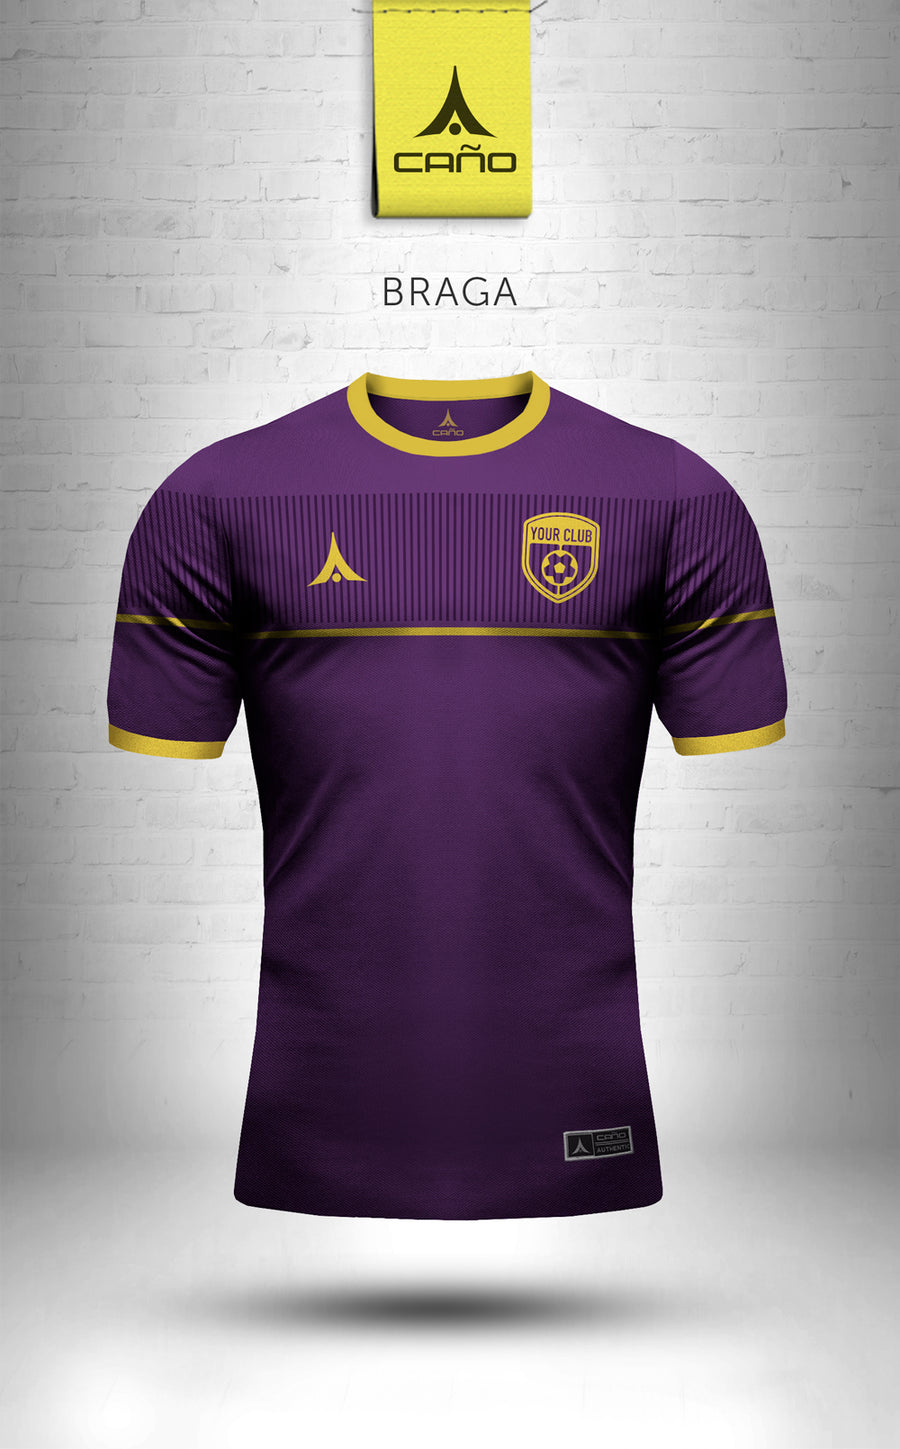 Braga in purple/gold